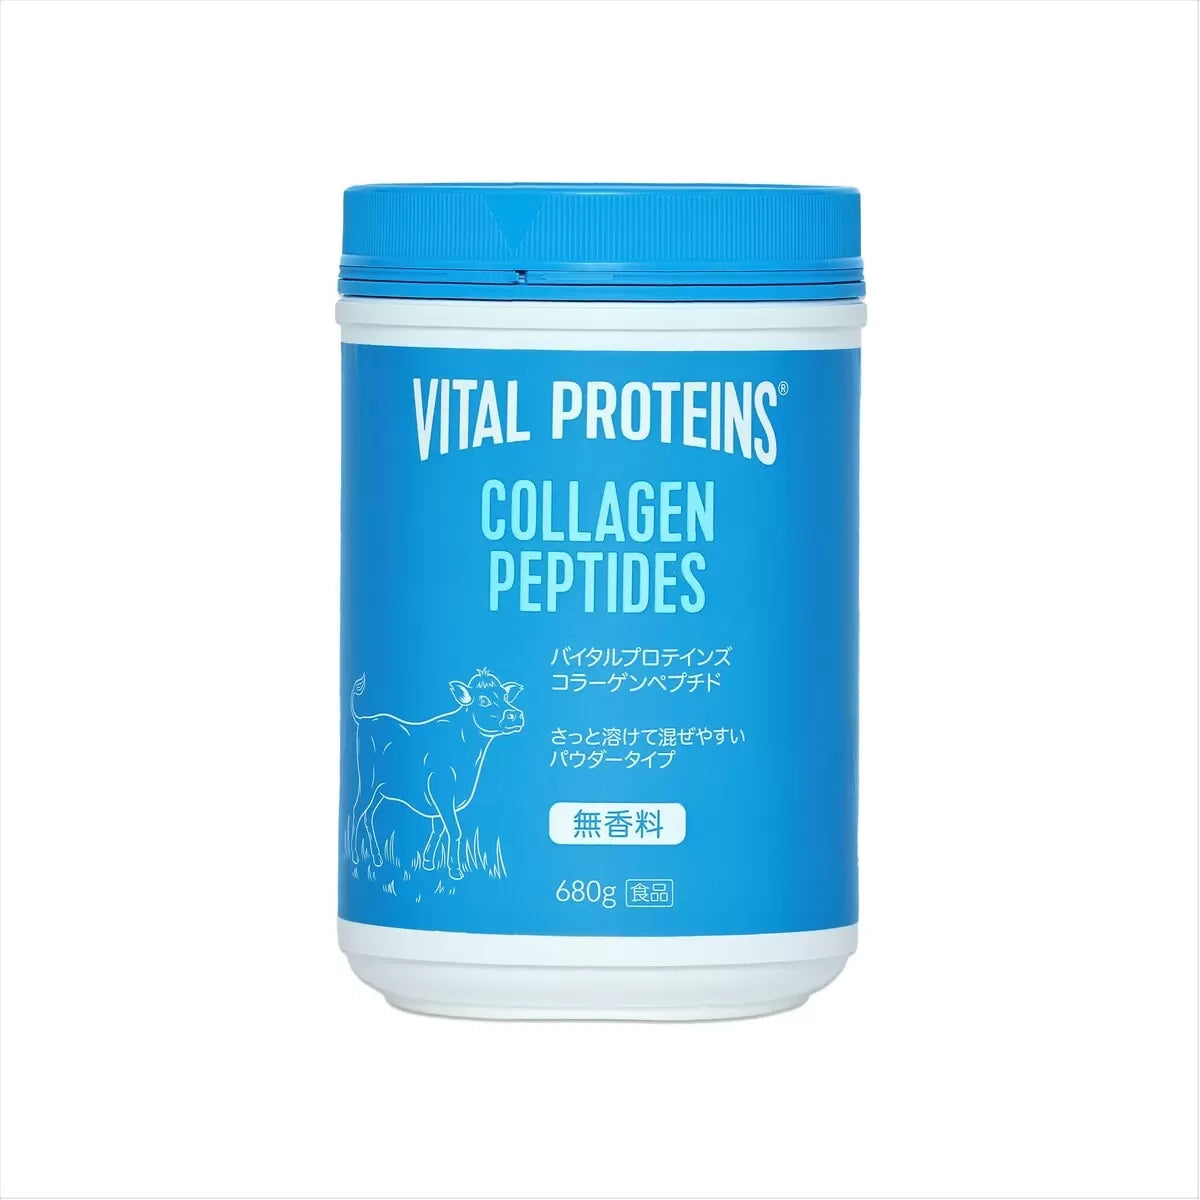 バイタルプロテインズ コラーゲンペプチド 680g Vital Proteins Collagen Peptides - HAPIVERI